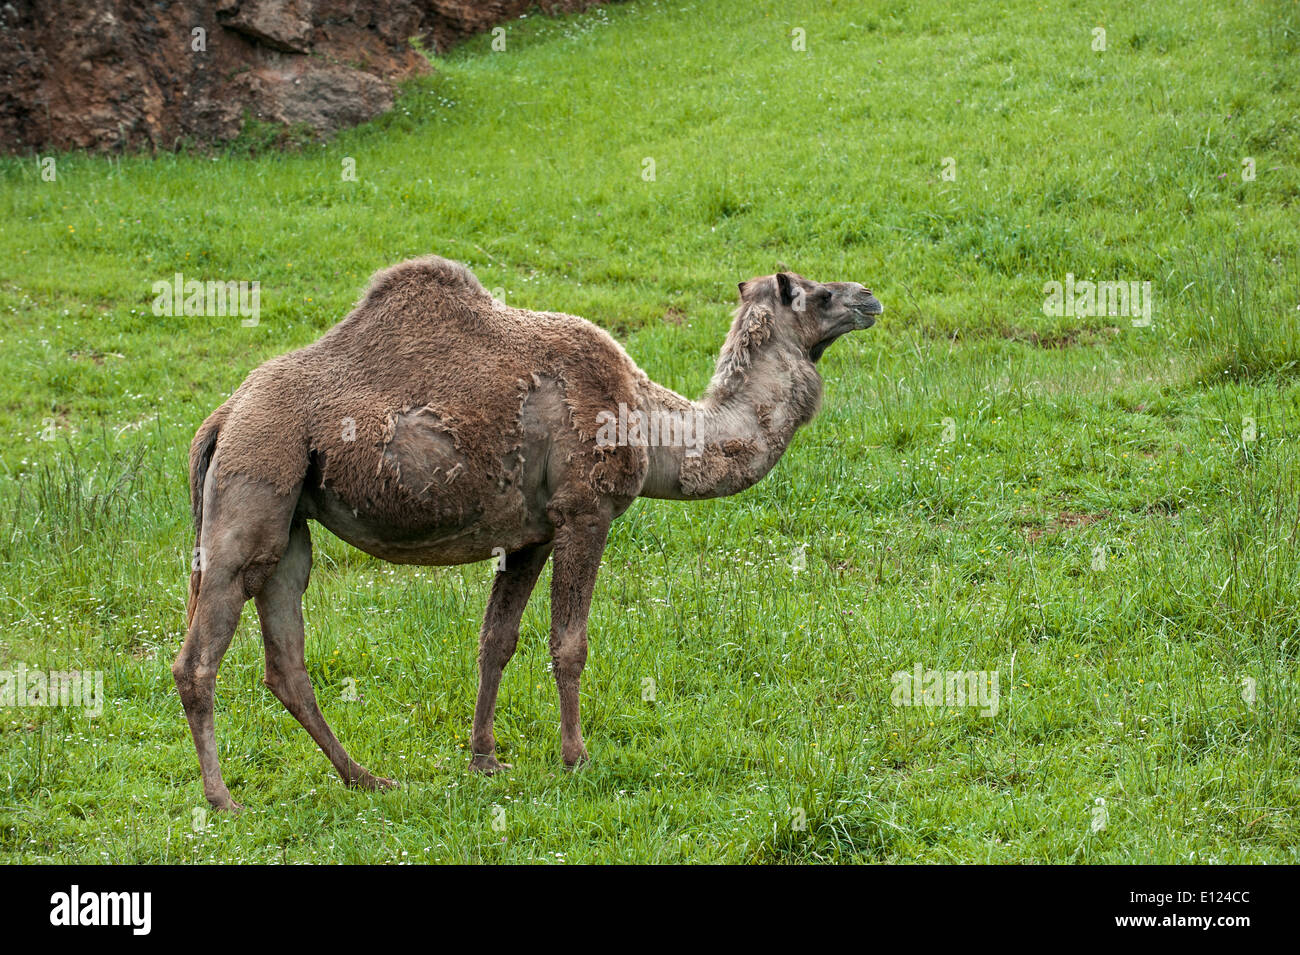 Dromadaire / chameau arabe mue / Indian camel (Camelus dromedarius) au printemps Banque D'Images